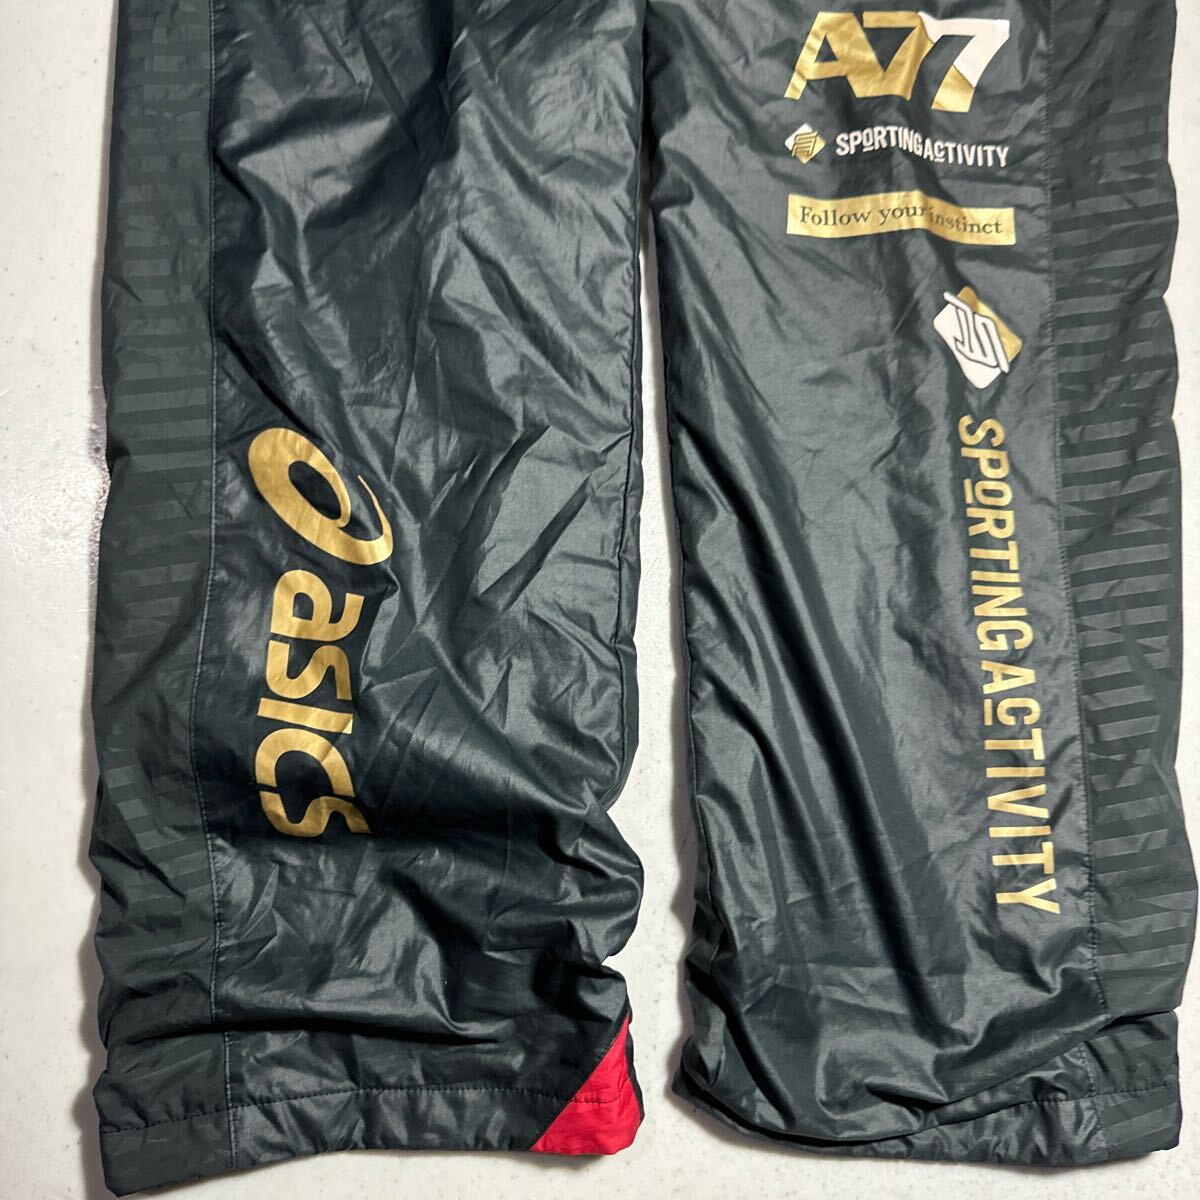  Asics asics A77 спорт тренировка для подкладка есть pi стерео брюки 2XO размер 